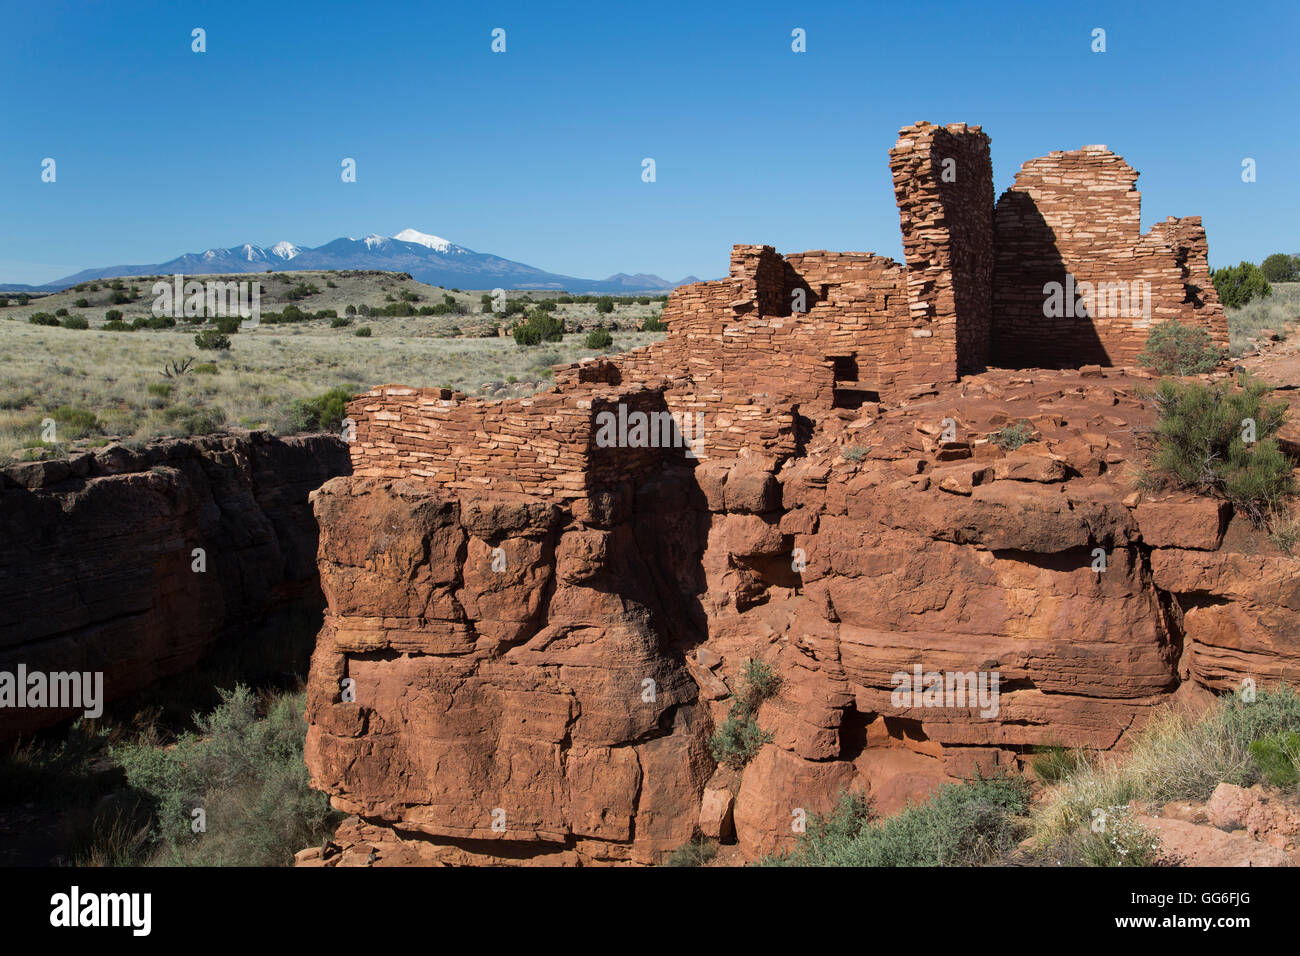 Lomaki Pueblo, inhabited from approximately 1100 AD to 1250 AD, Wupatki National Monument, Arizona, USA Stock Photo